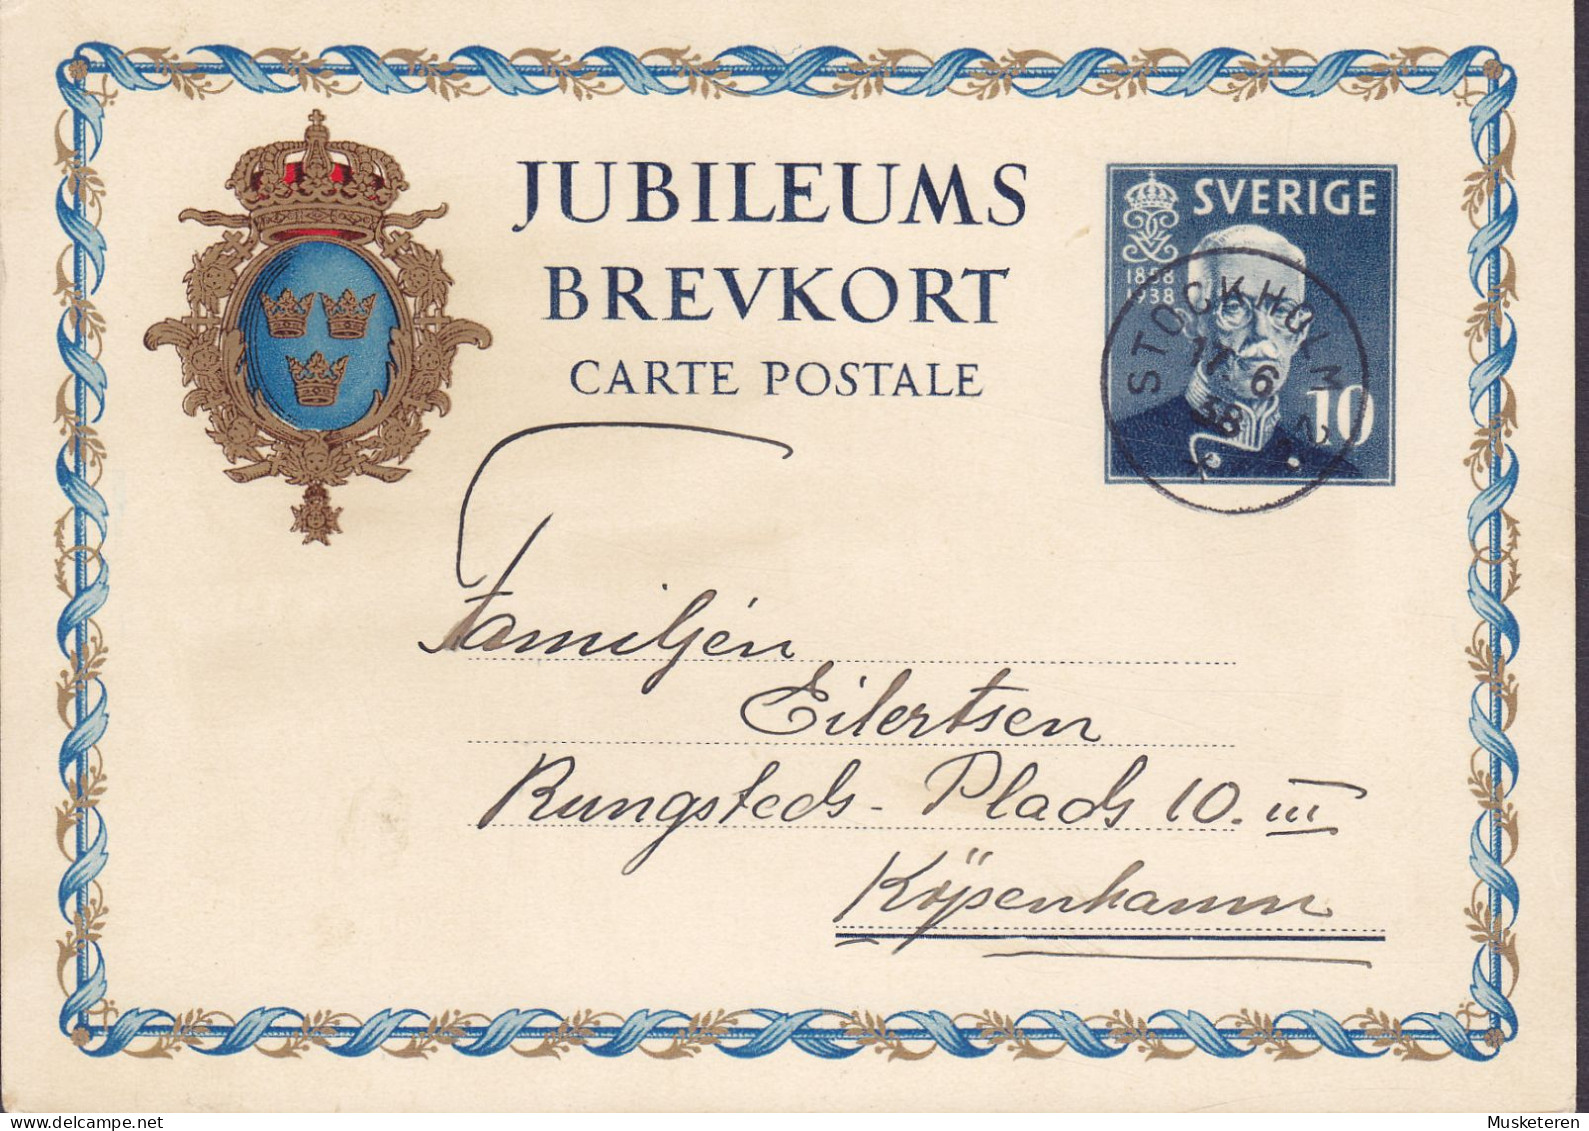 Sweden Postal Stationery Ganzsache Entier 10 Ø Jubileums Brevkort 1858-1938 STOCKHOLM 1938 KØBENHAVN Denmark - Entiers Postaux